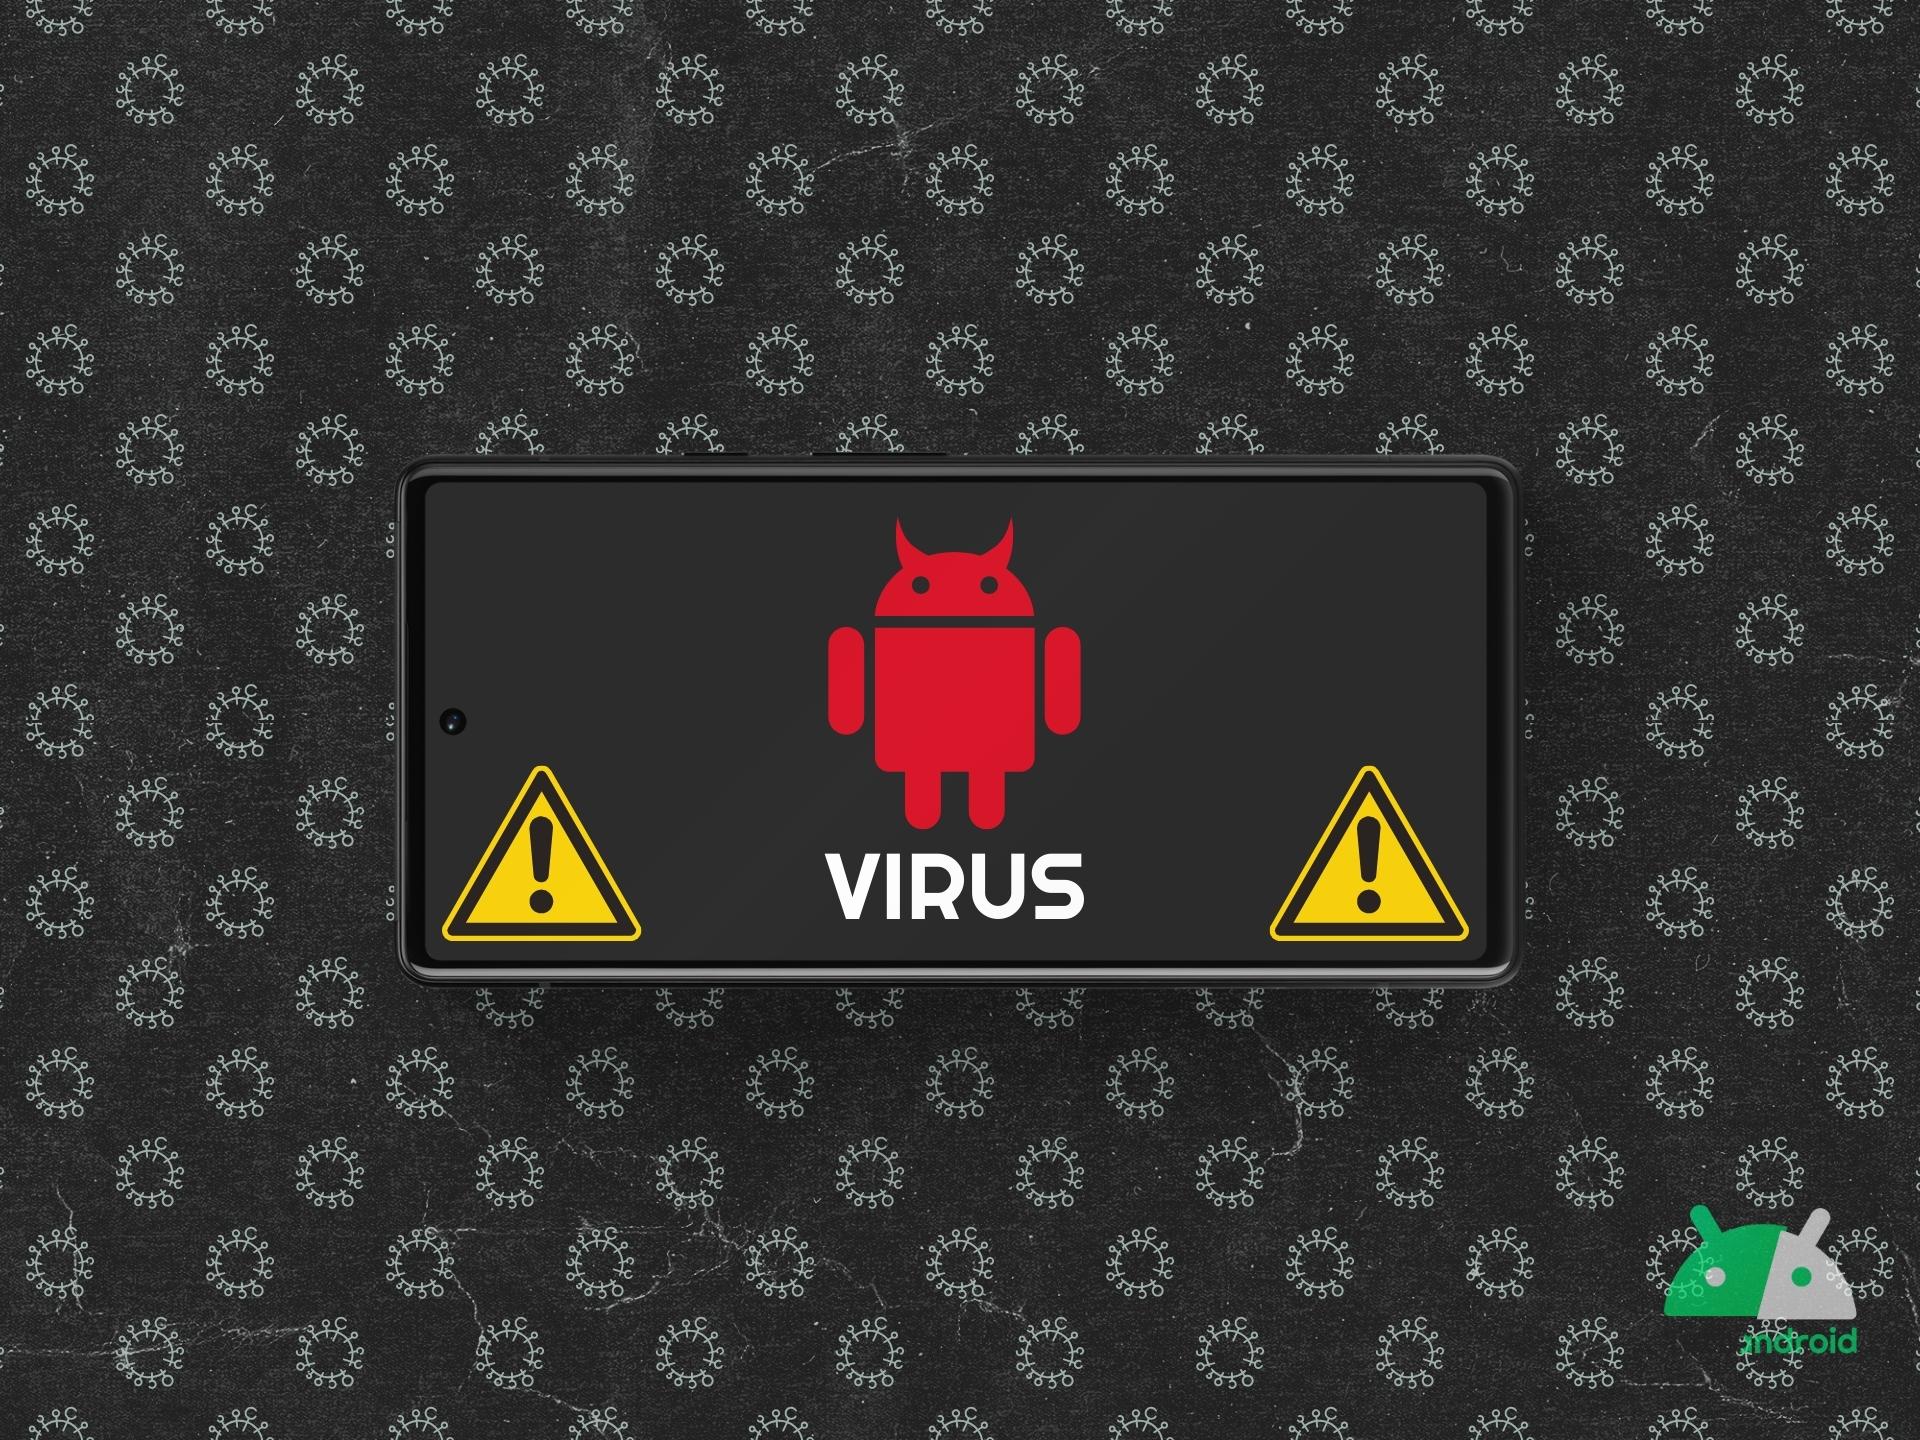 Attenti a Snowblind, il nuovo virus Android “svuota conti”